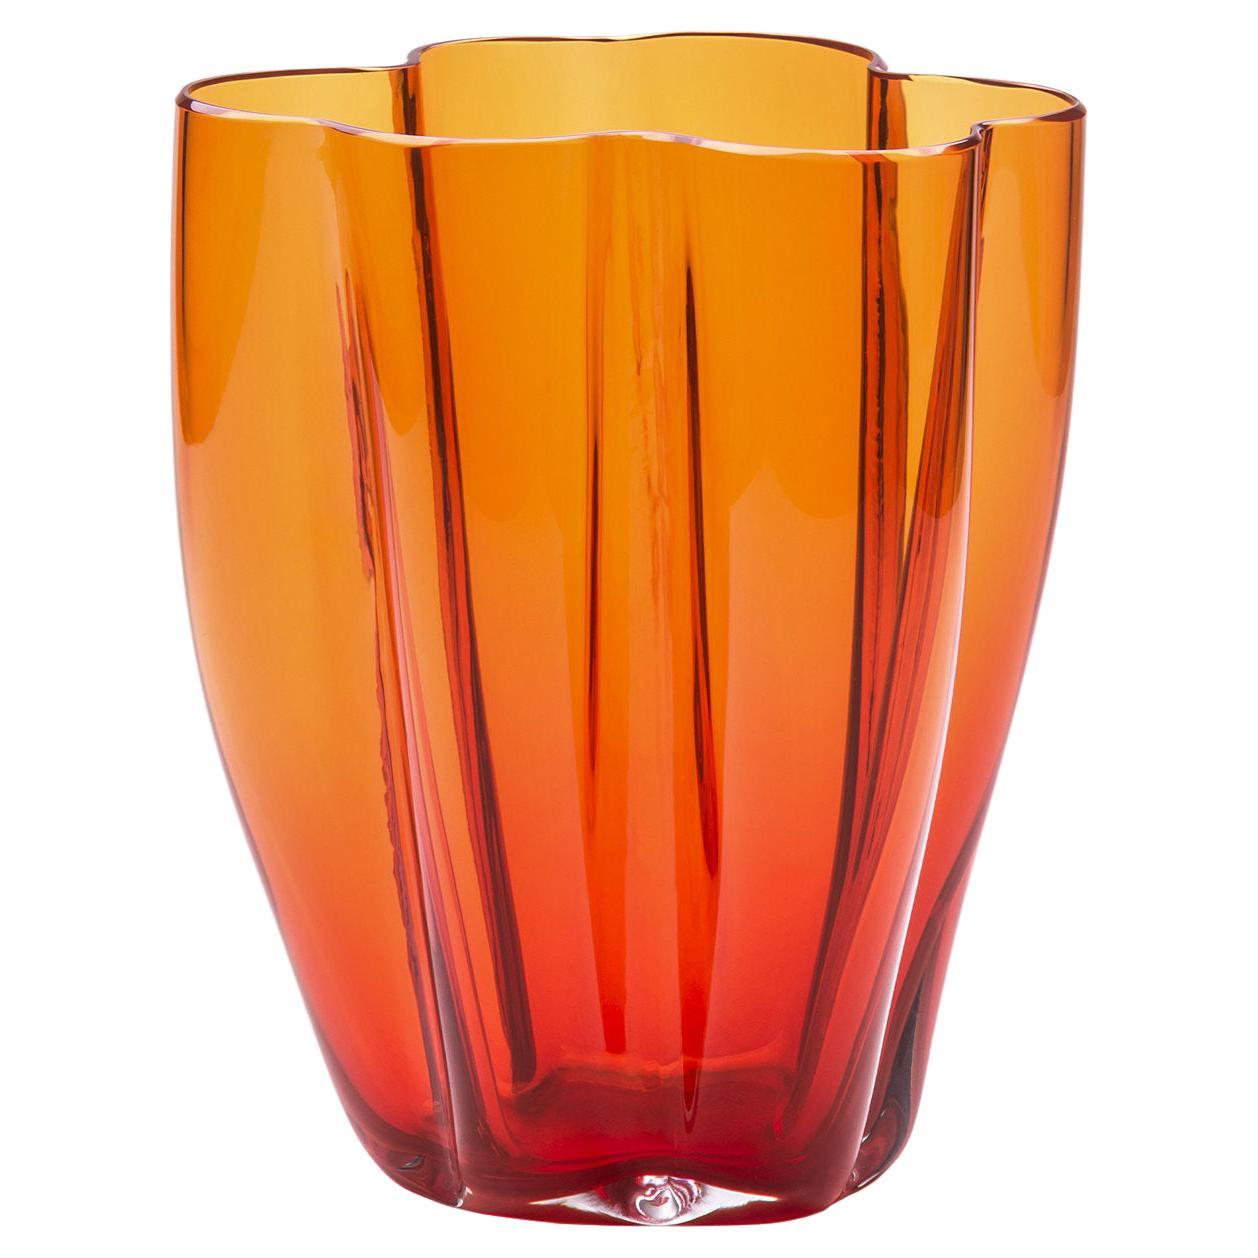 Petit vase orange Petalo